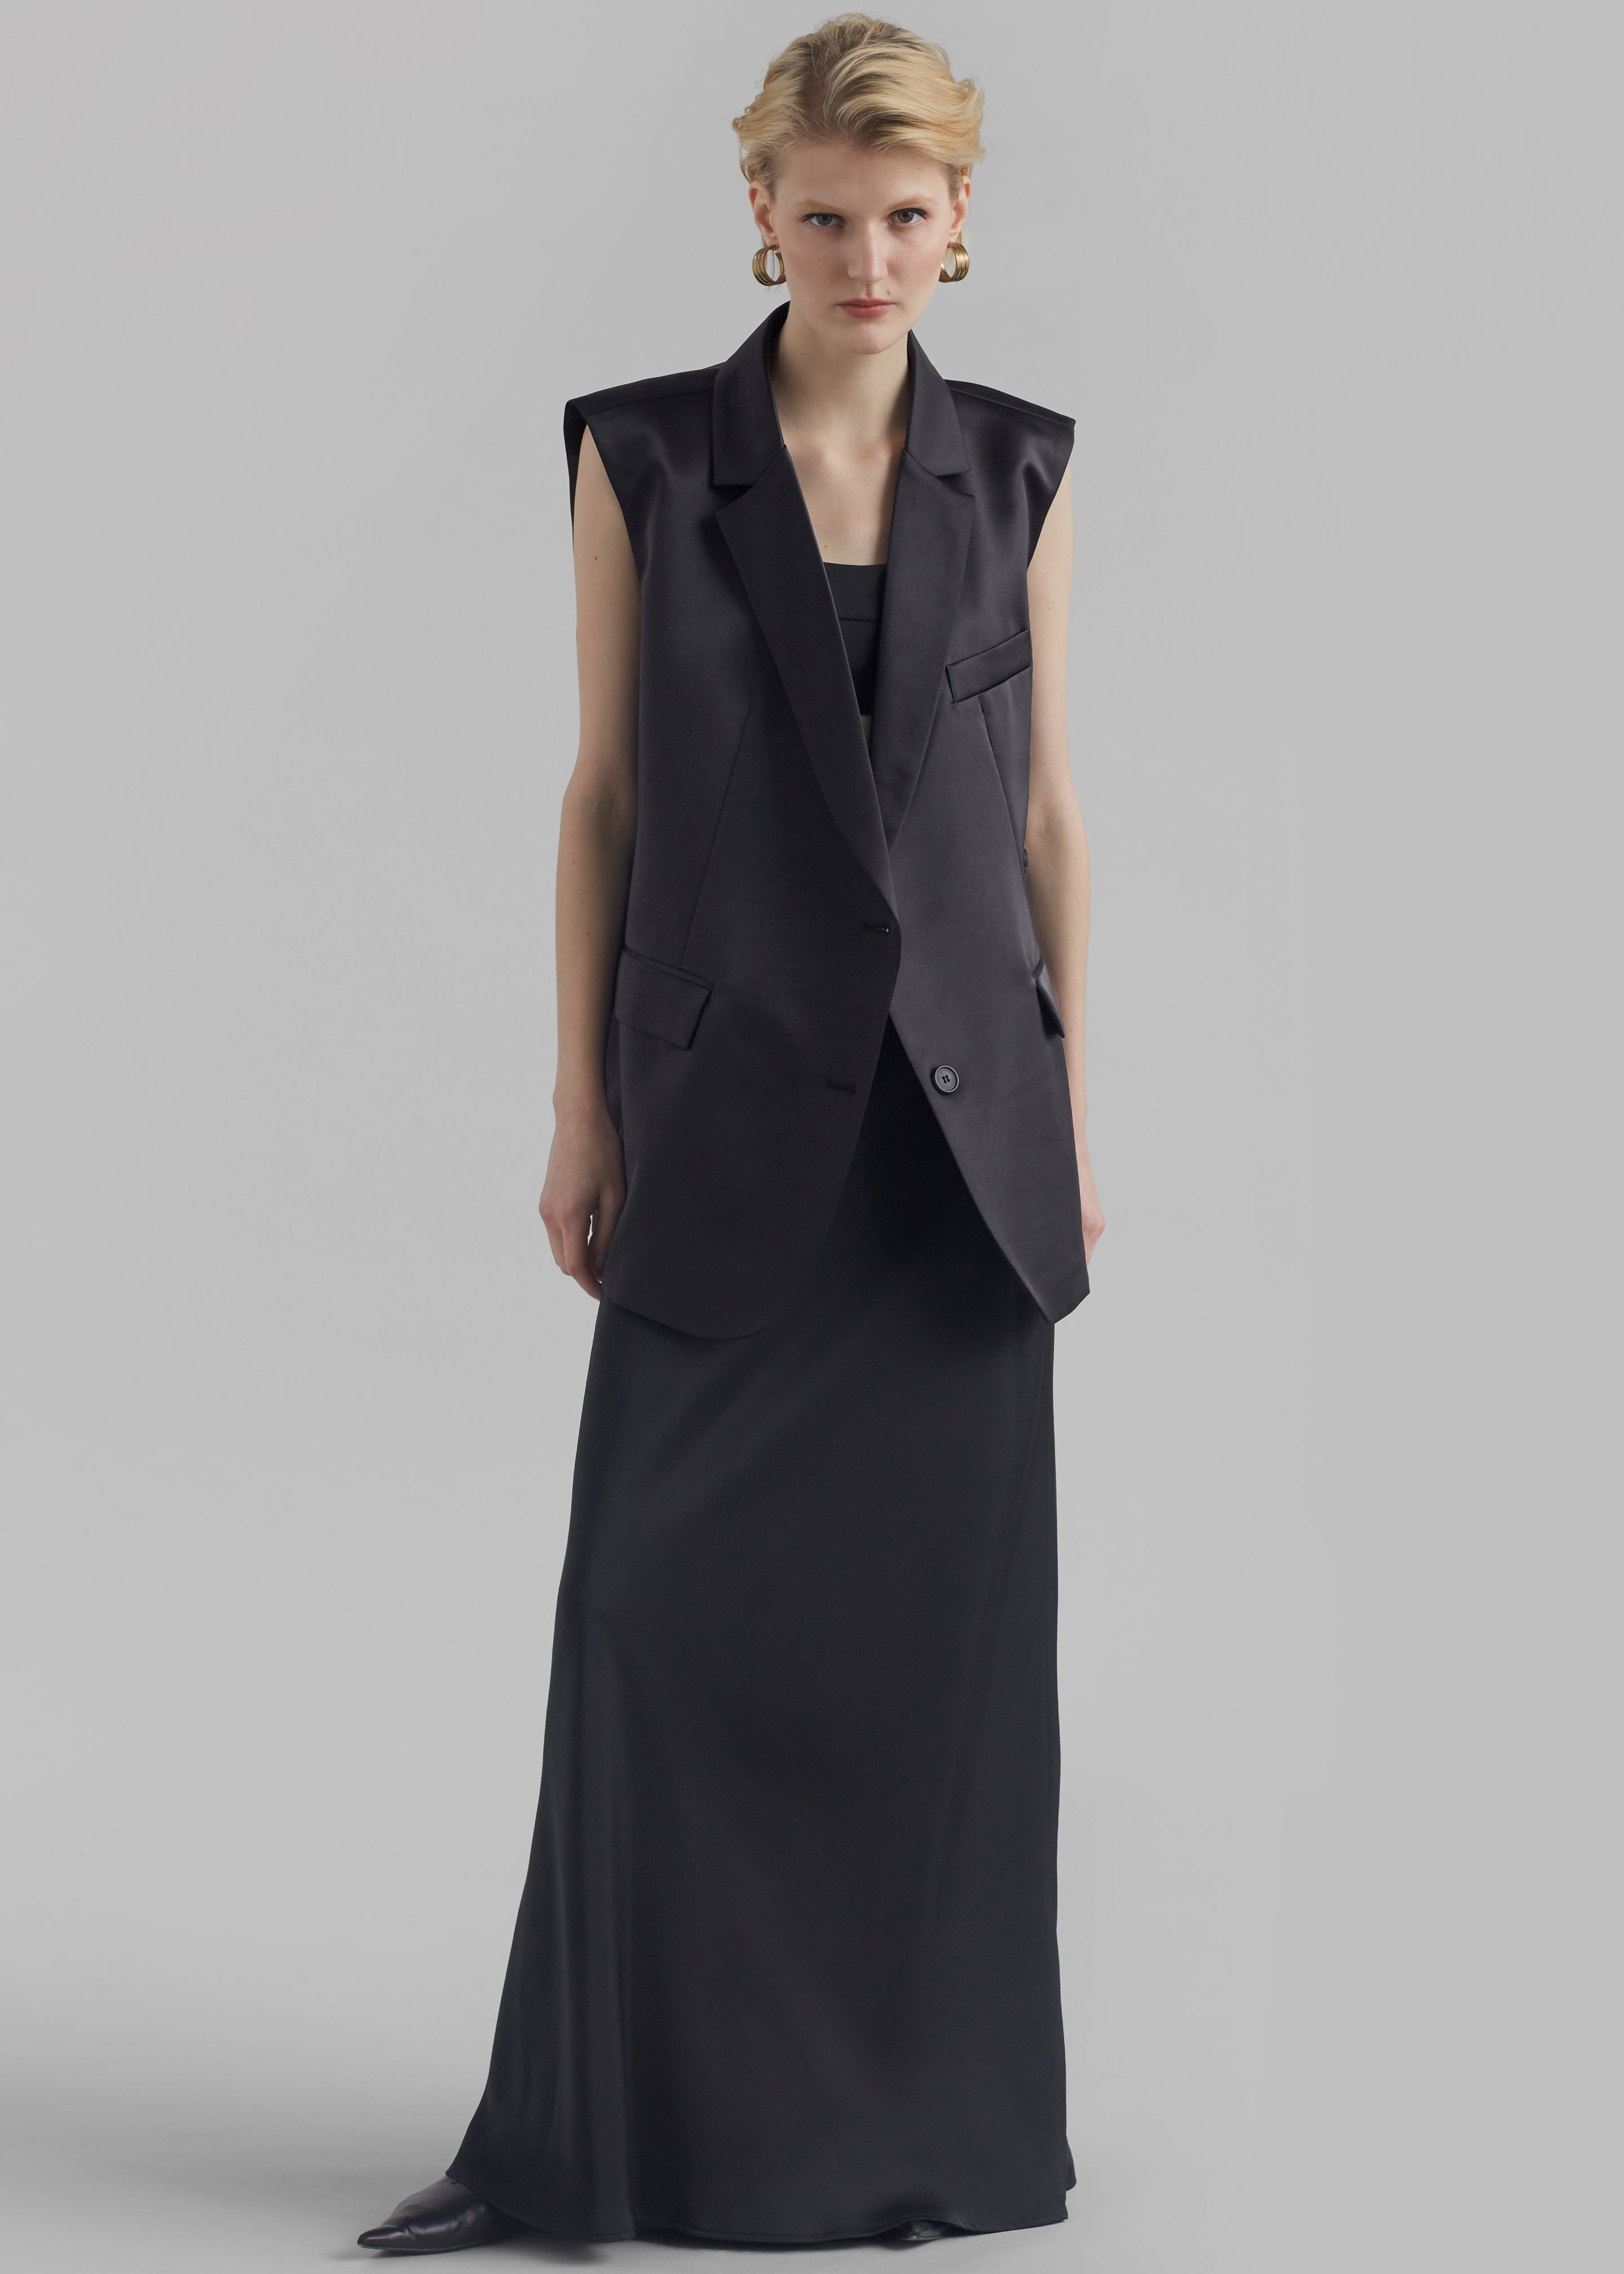 Chaleco para Mujer - TM-VH-185 Black Vest for Women – Nantli's - Online  Store